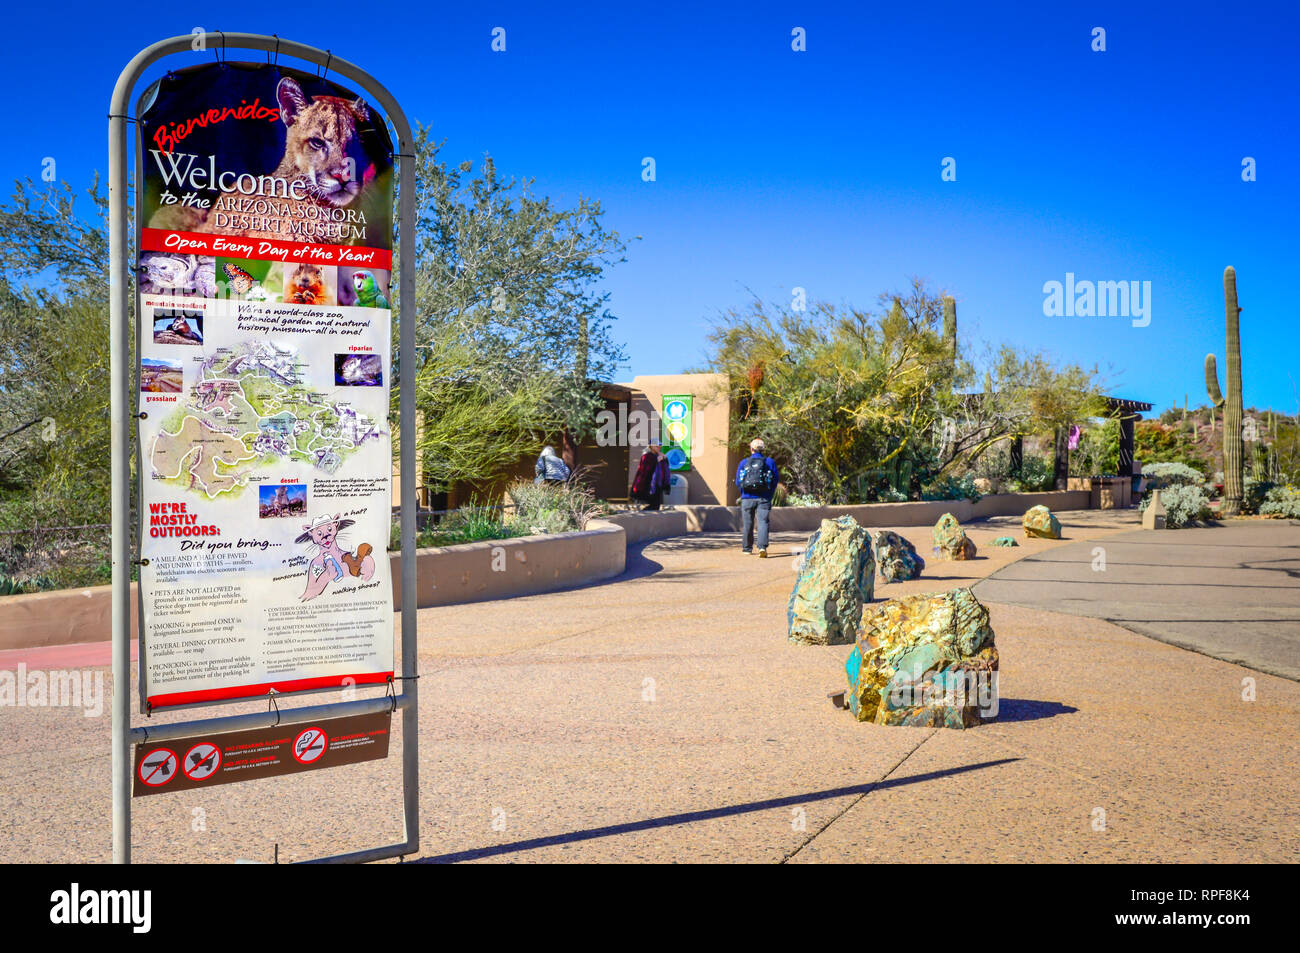 Eine informierende Schild begrüßt Besucher vor dem Arizona-Sonora Desert Museum Eingang in Tucson, AZ, USA Stockfoto